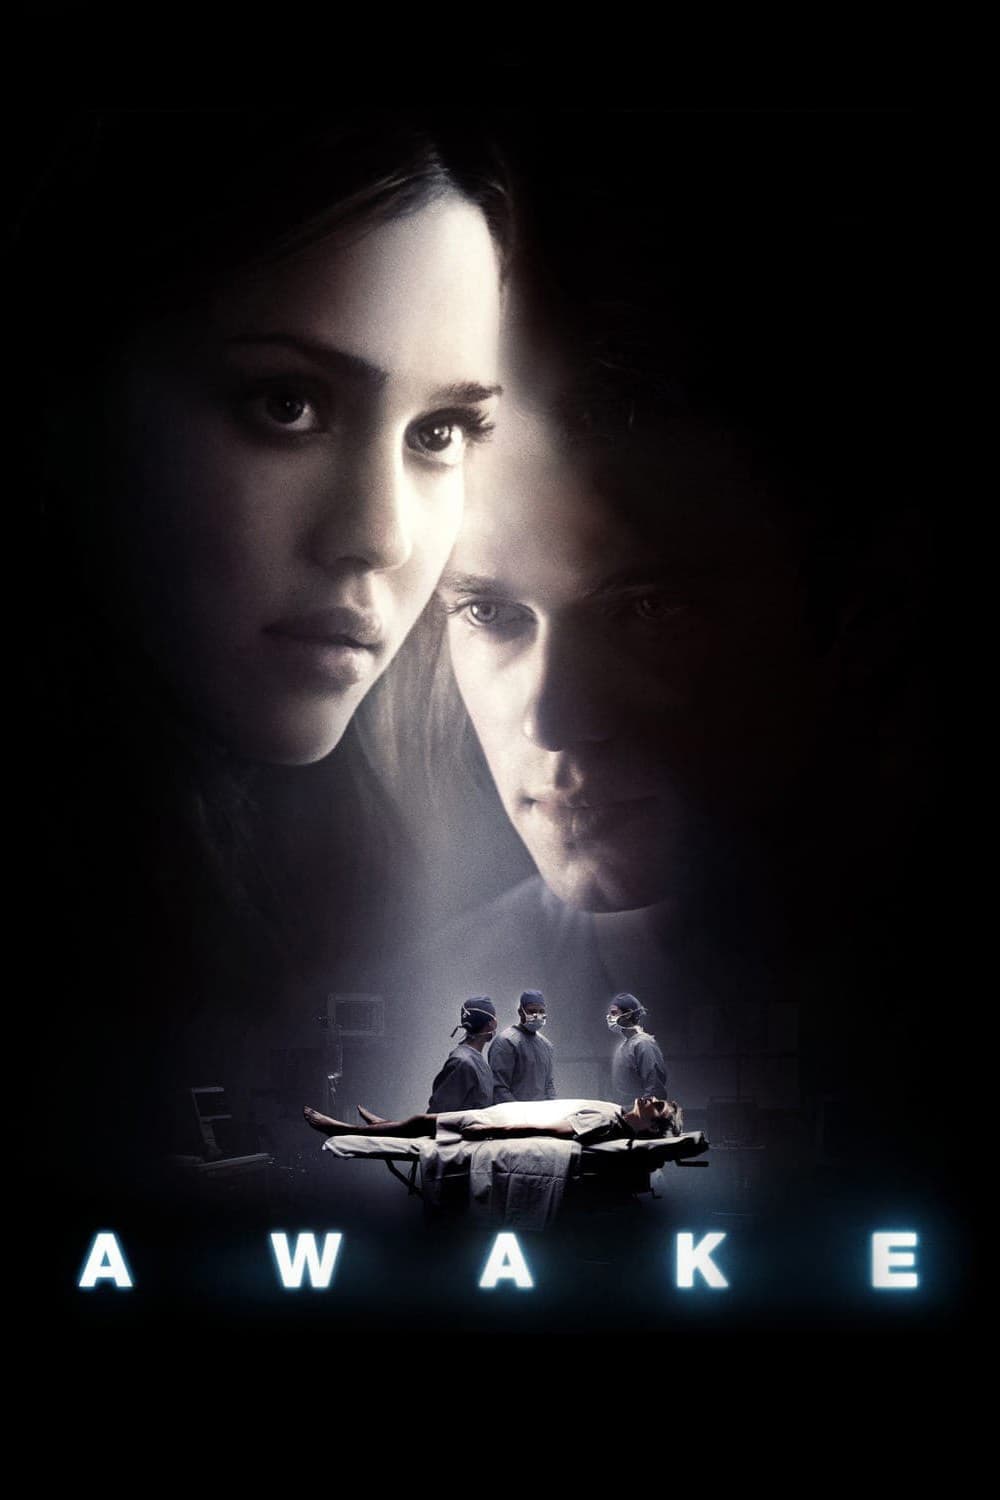 Awake: A Vida Por um Fio (2007)